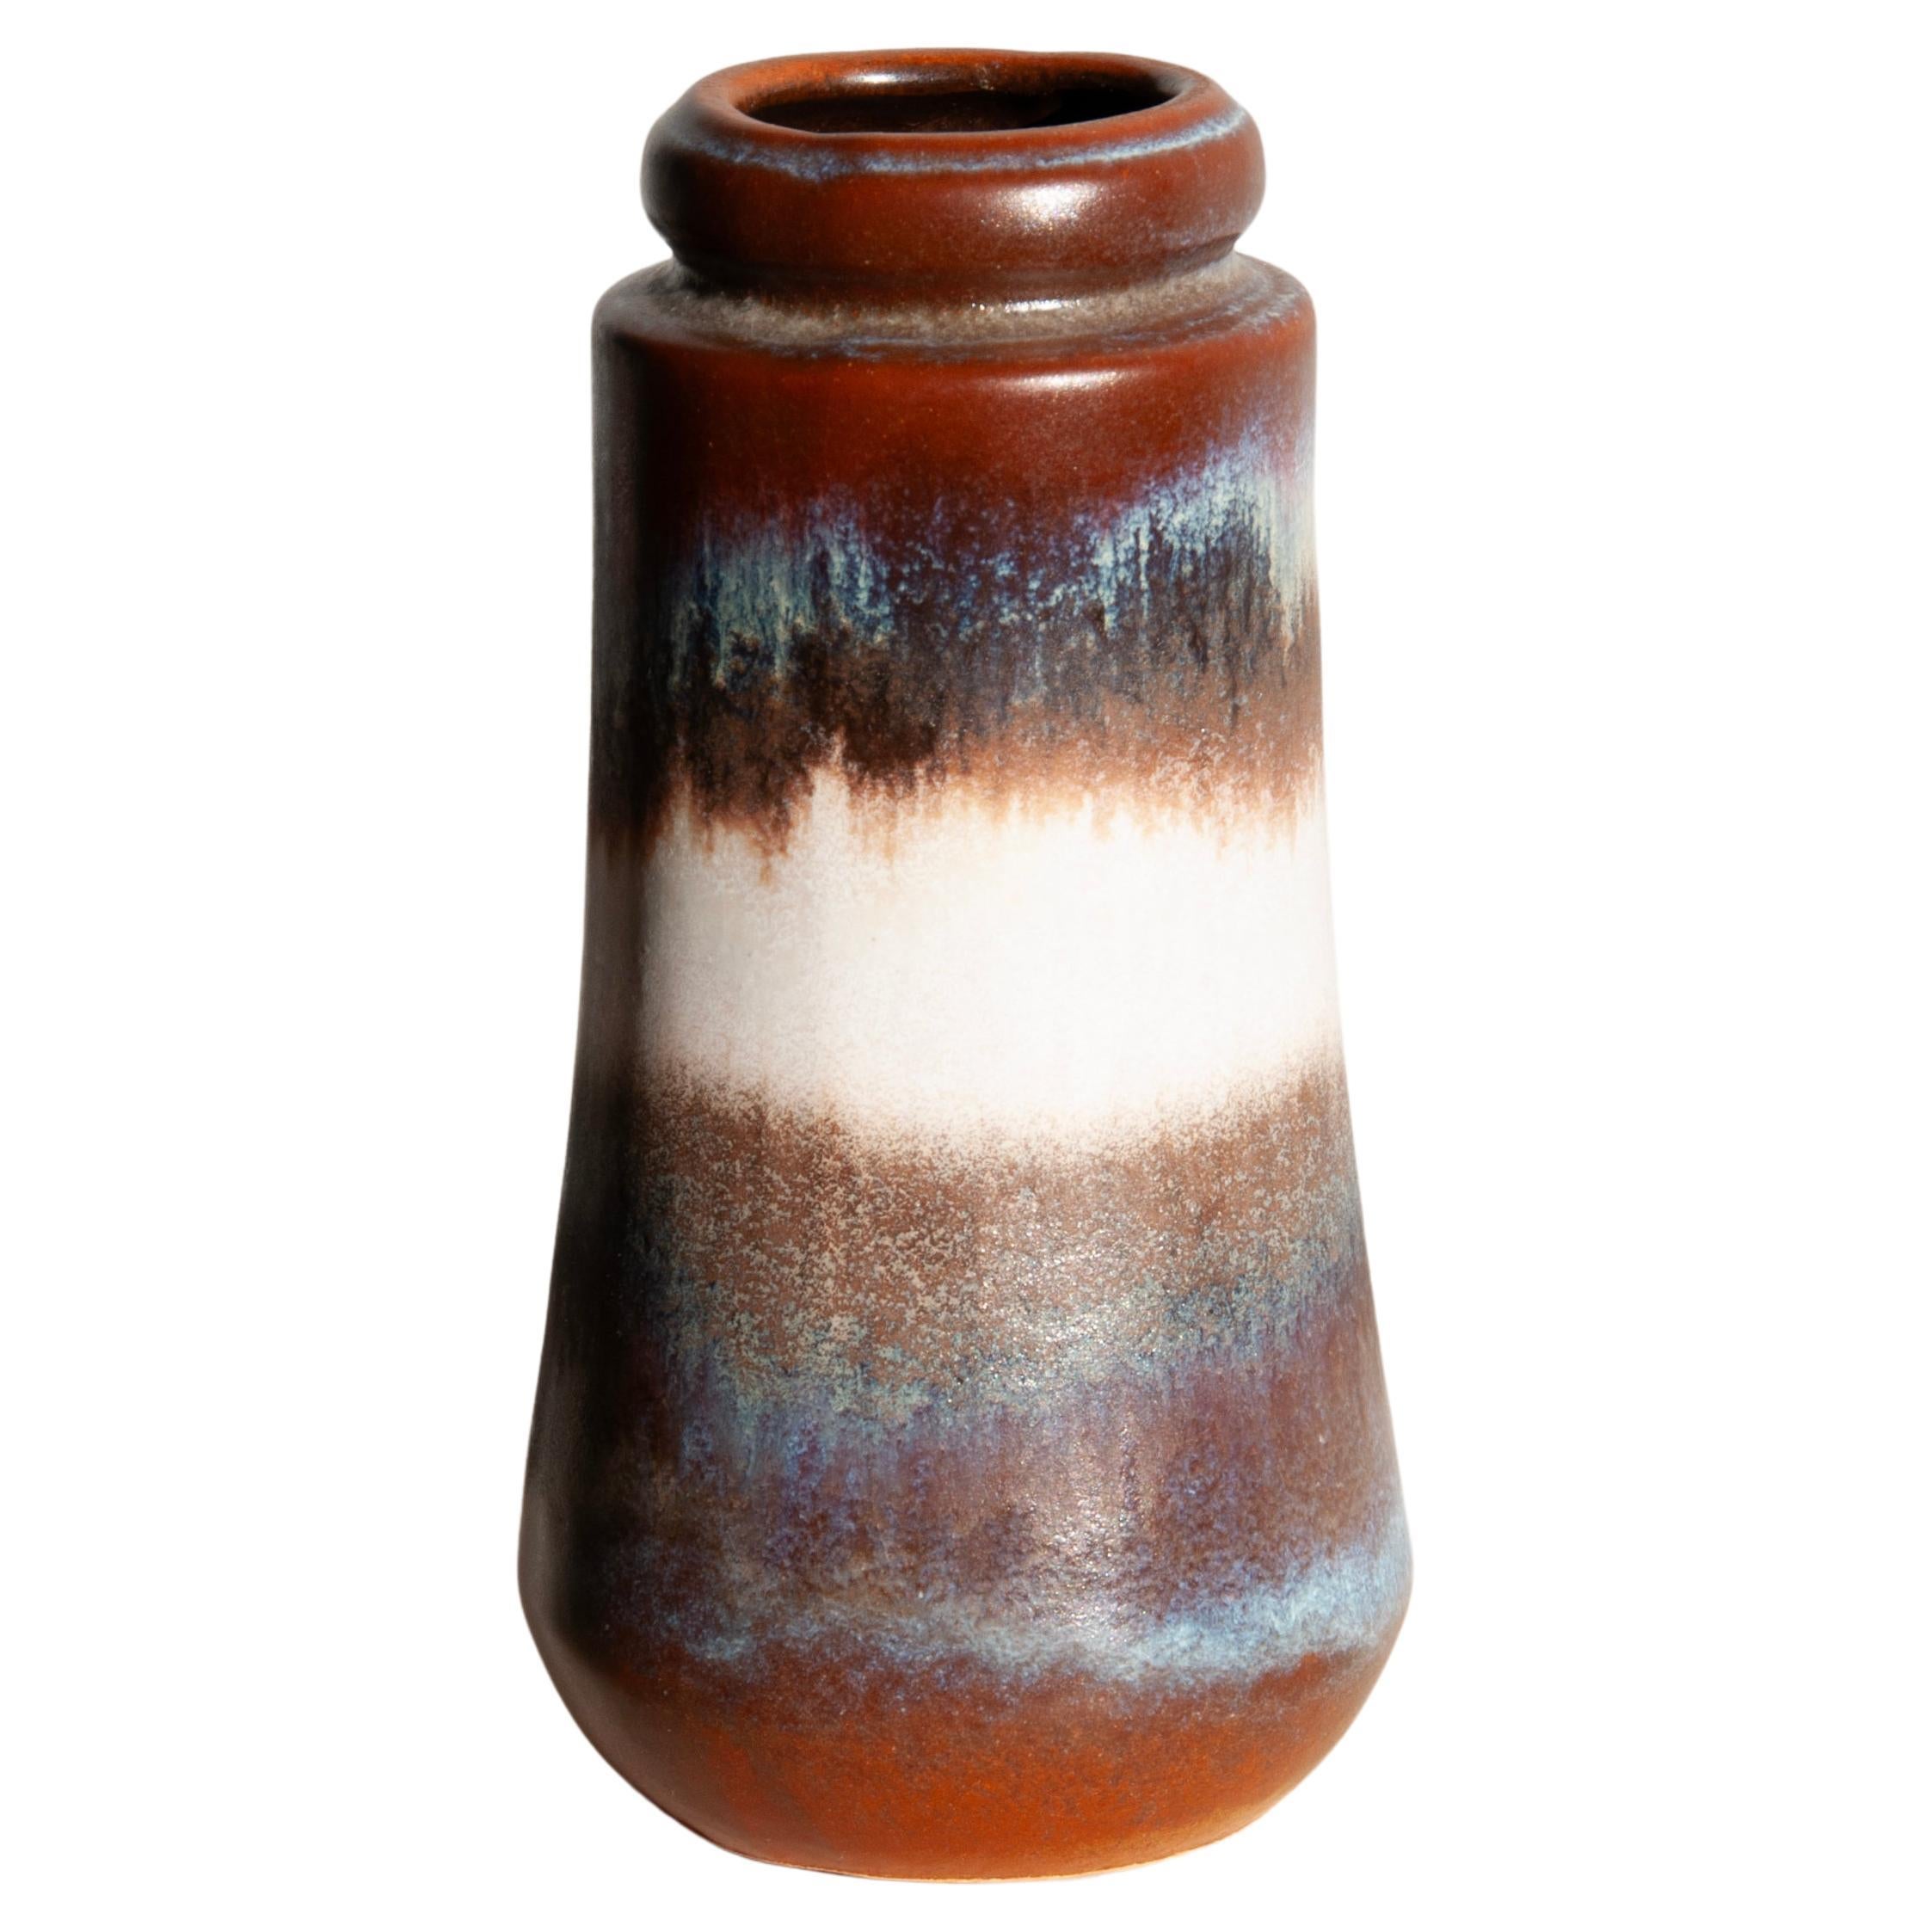 West-Deutschland Scheurich Keramik Vase - Modell 209-18